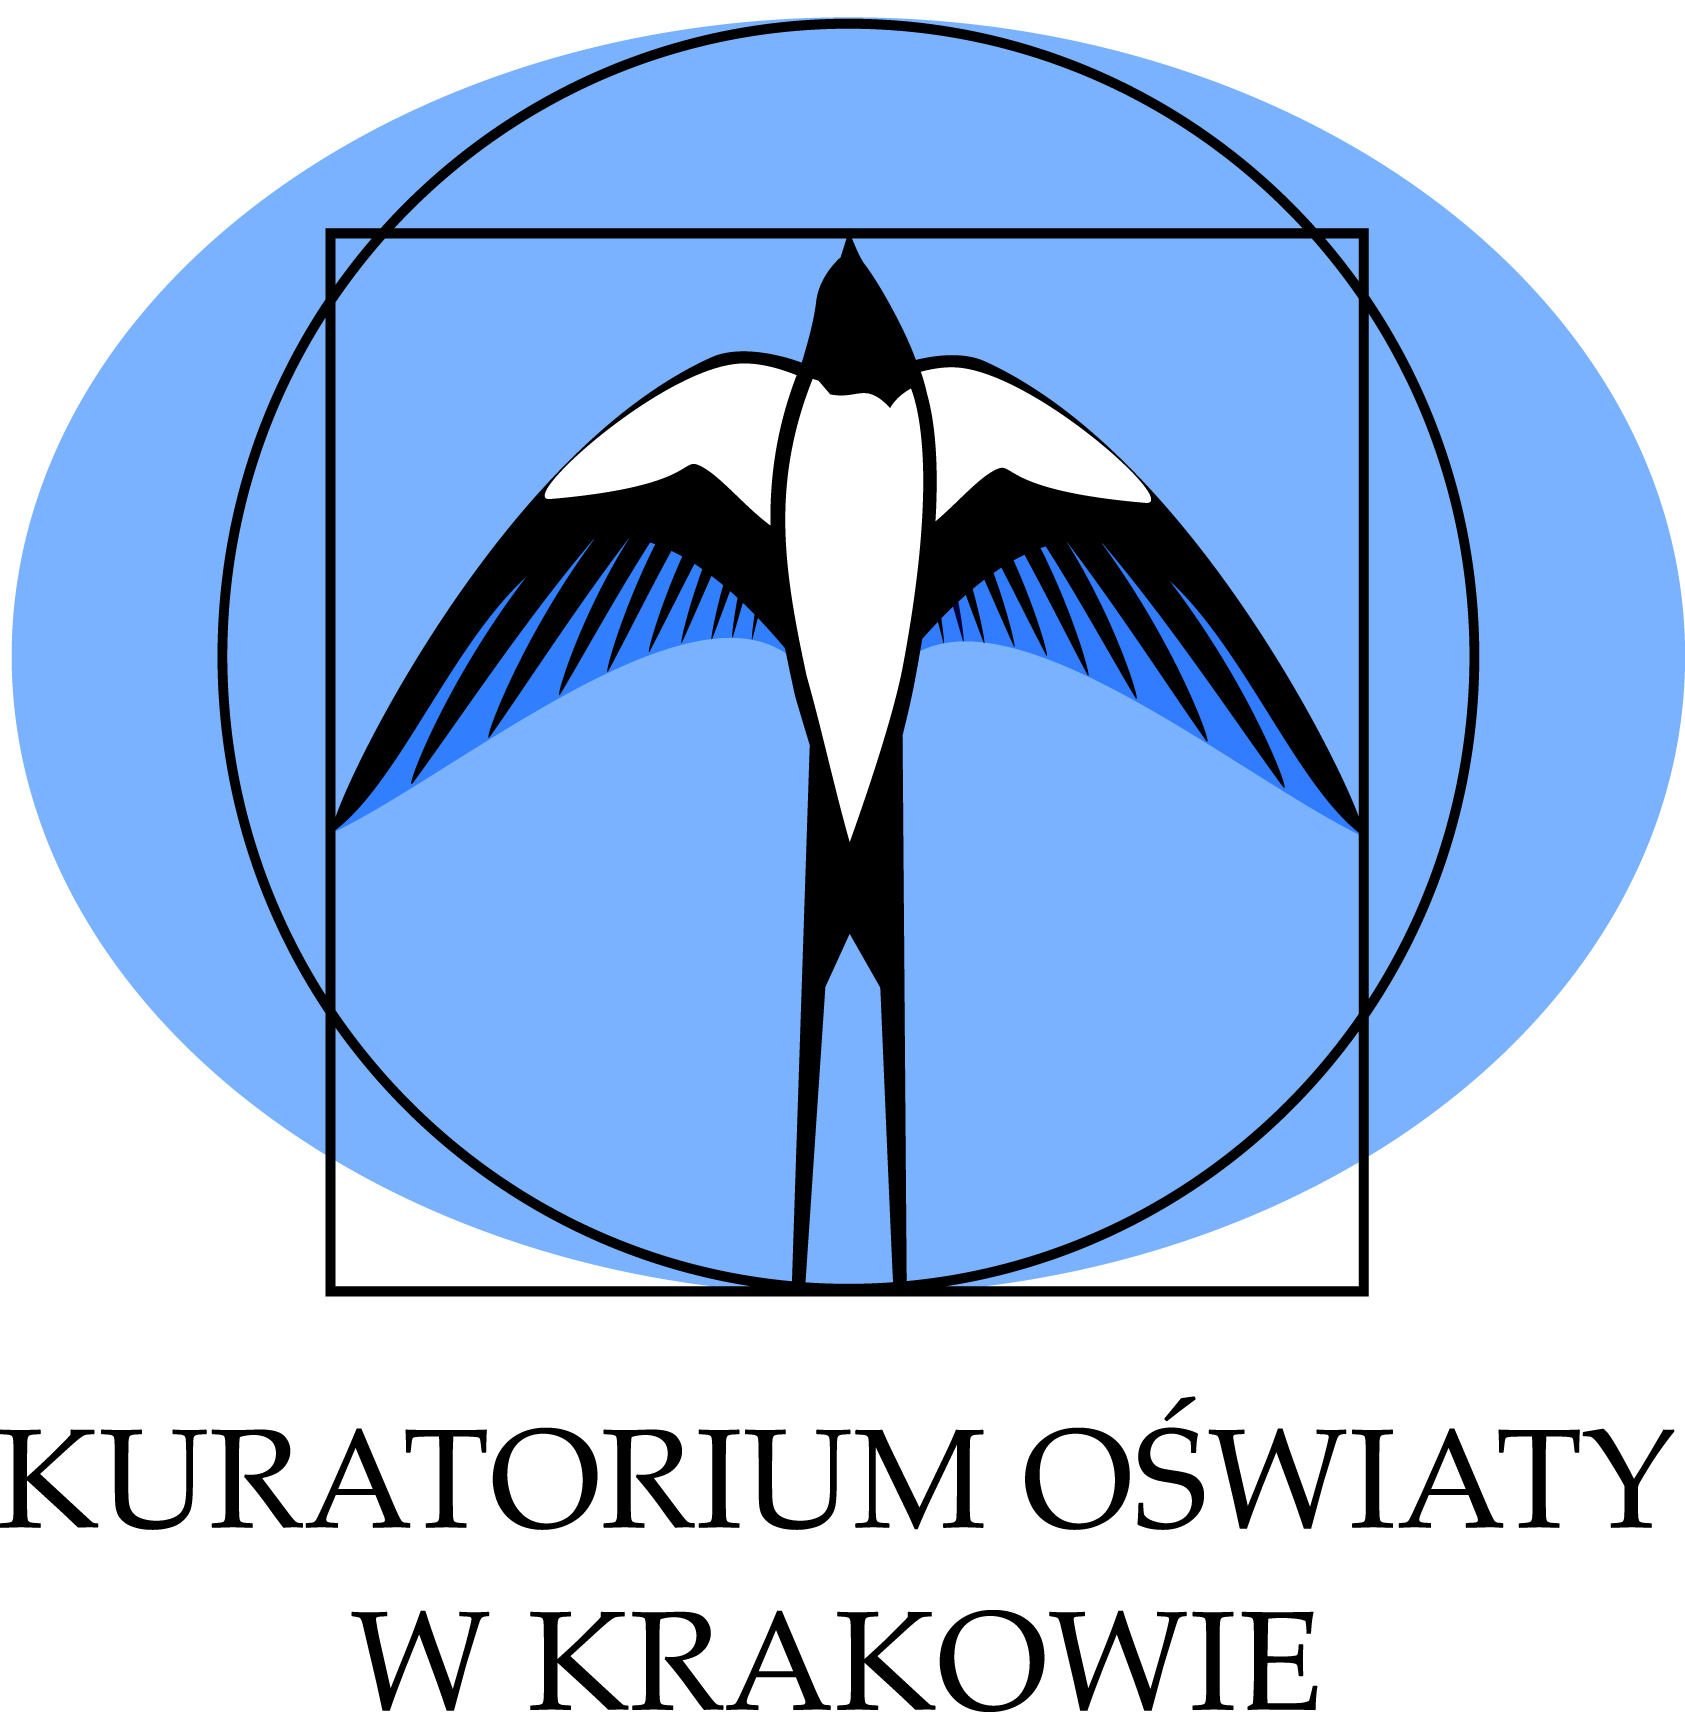 logo kuratorium